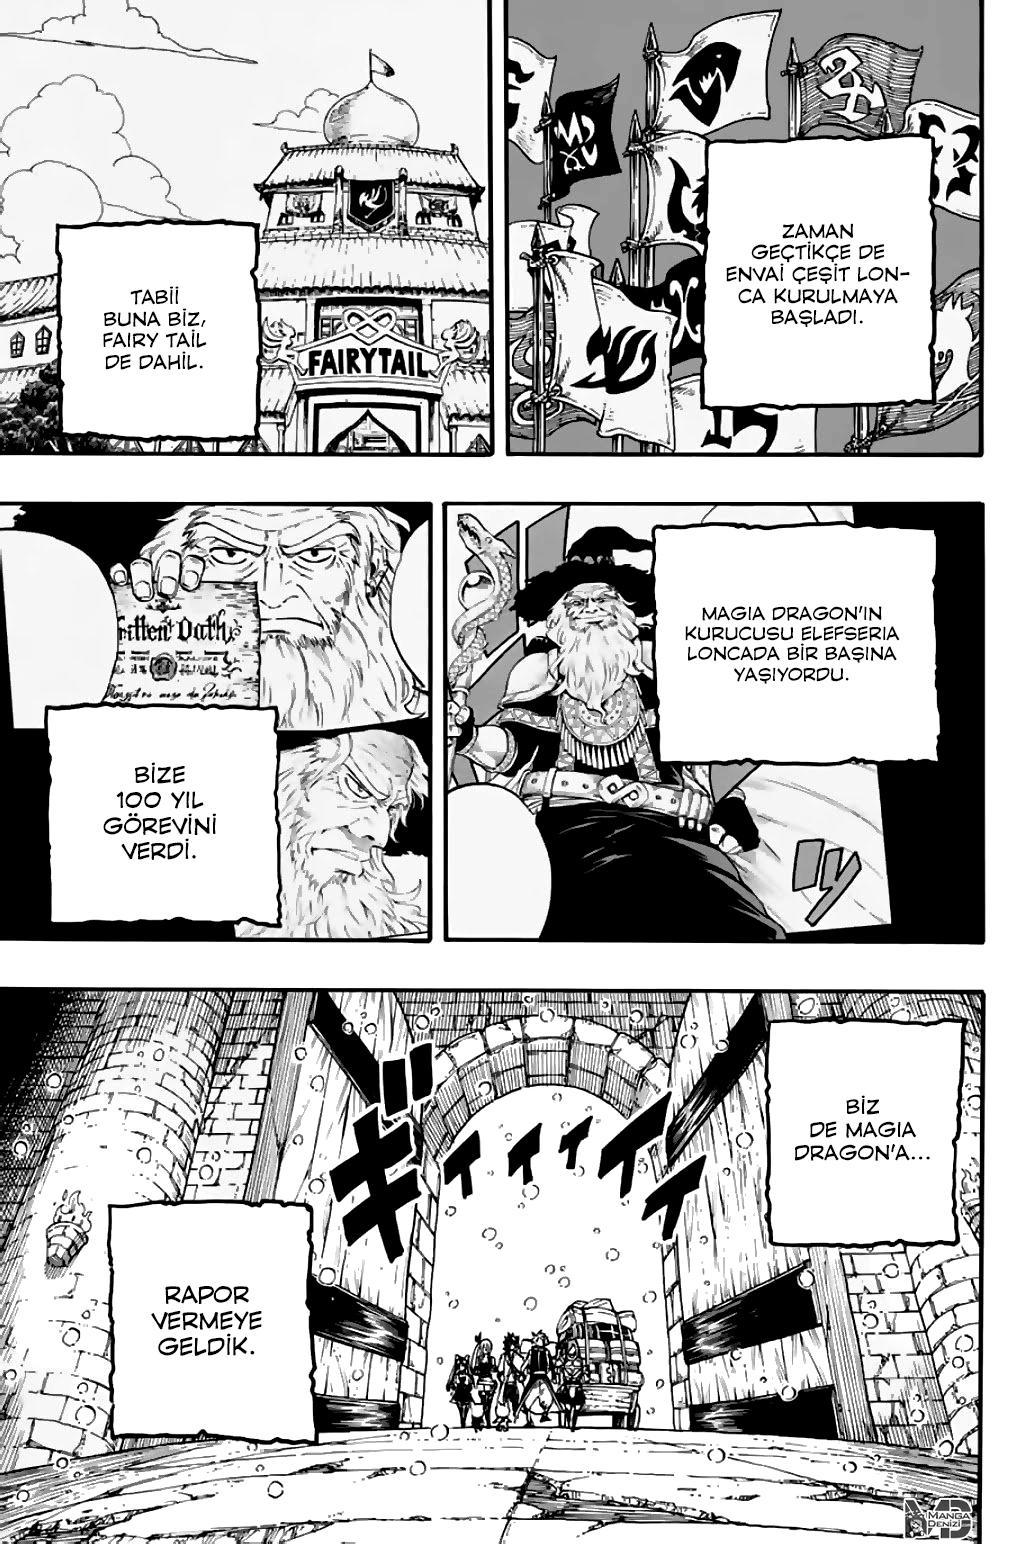 Fairy Tail: 100 Years Quest mangasının 092 bölümünün 4. sayfasını okuyorsunuz.